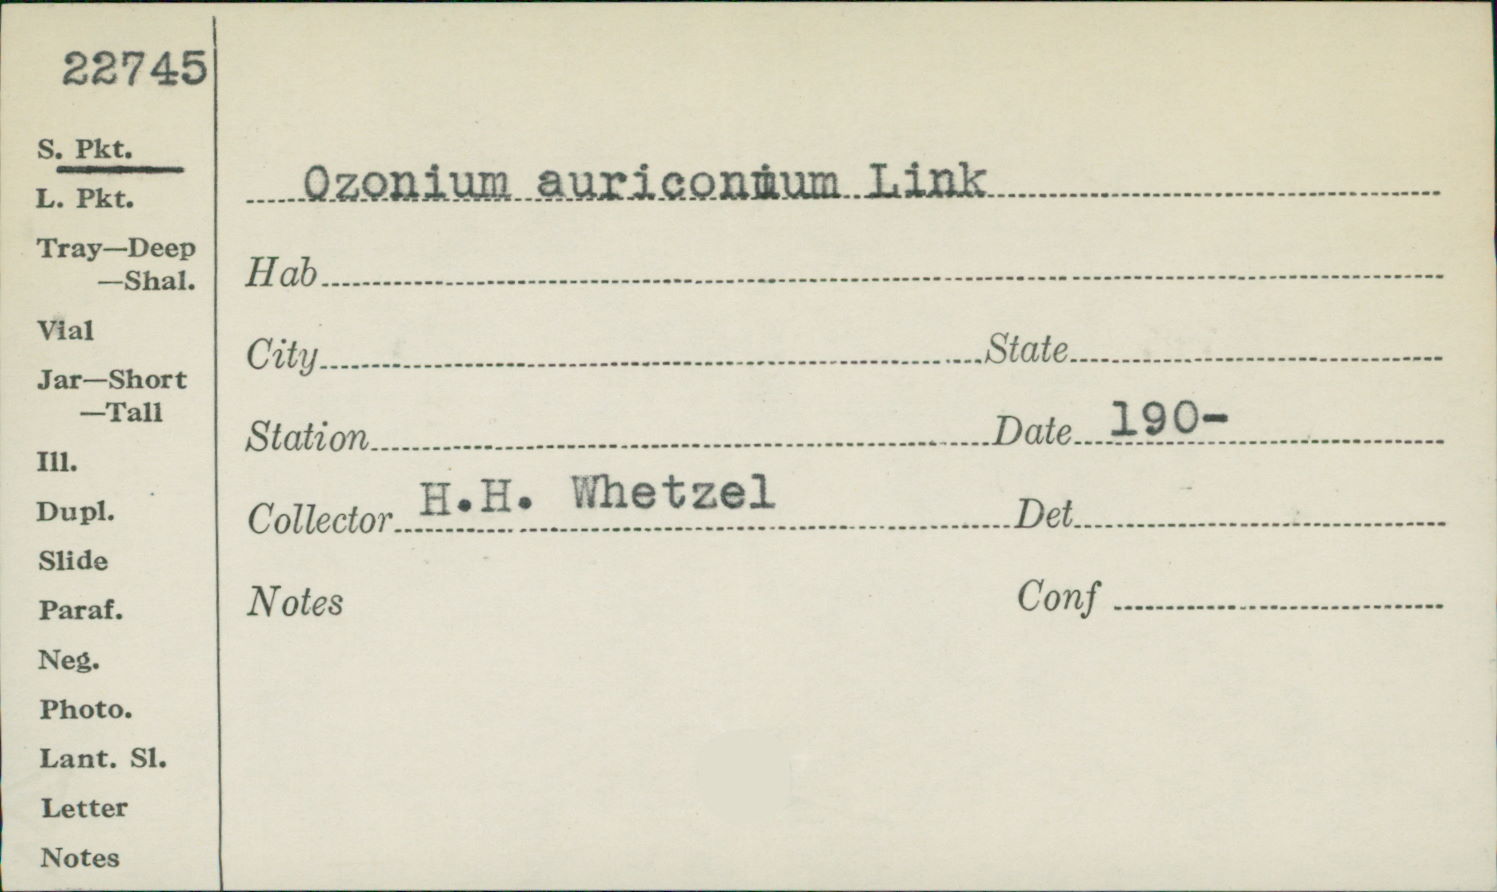 Ozonium auriconum image